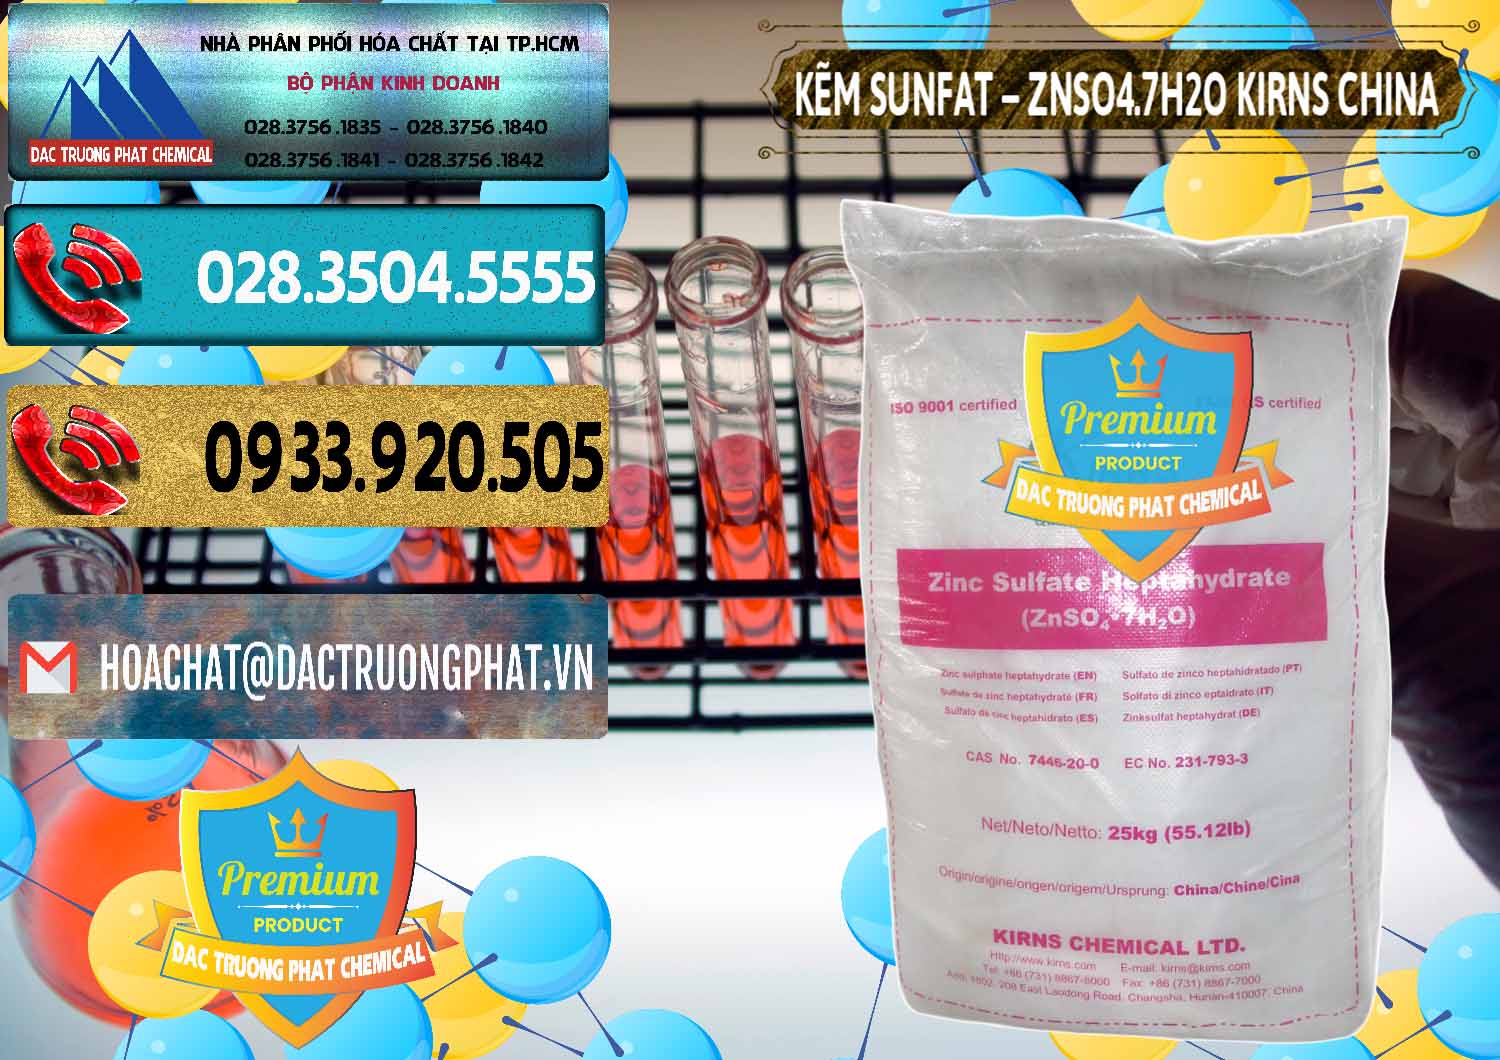 Nơi bán - cung cấp Kẽm Sunfat – ZNSO4.7H2O Kirns Trung Quốc China - 0089 - Cty nhập khẩu - phân phối hóa chất tại TP.HCM - hoachatdetnhuom.com